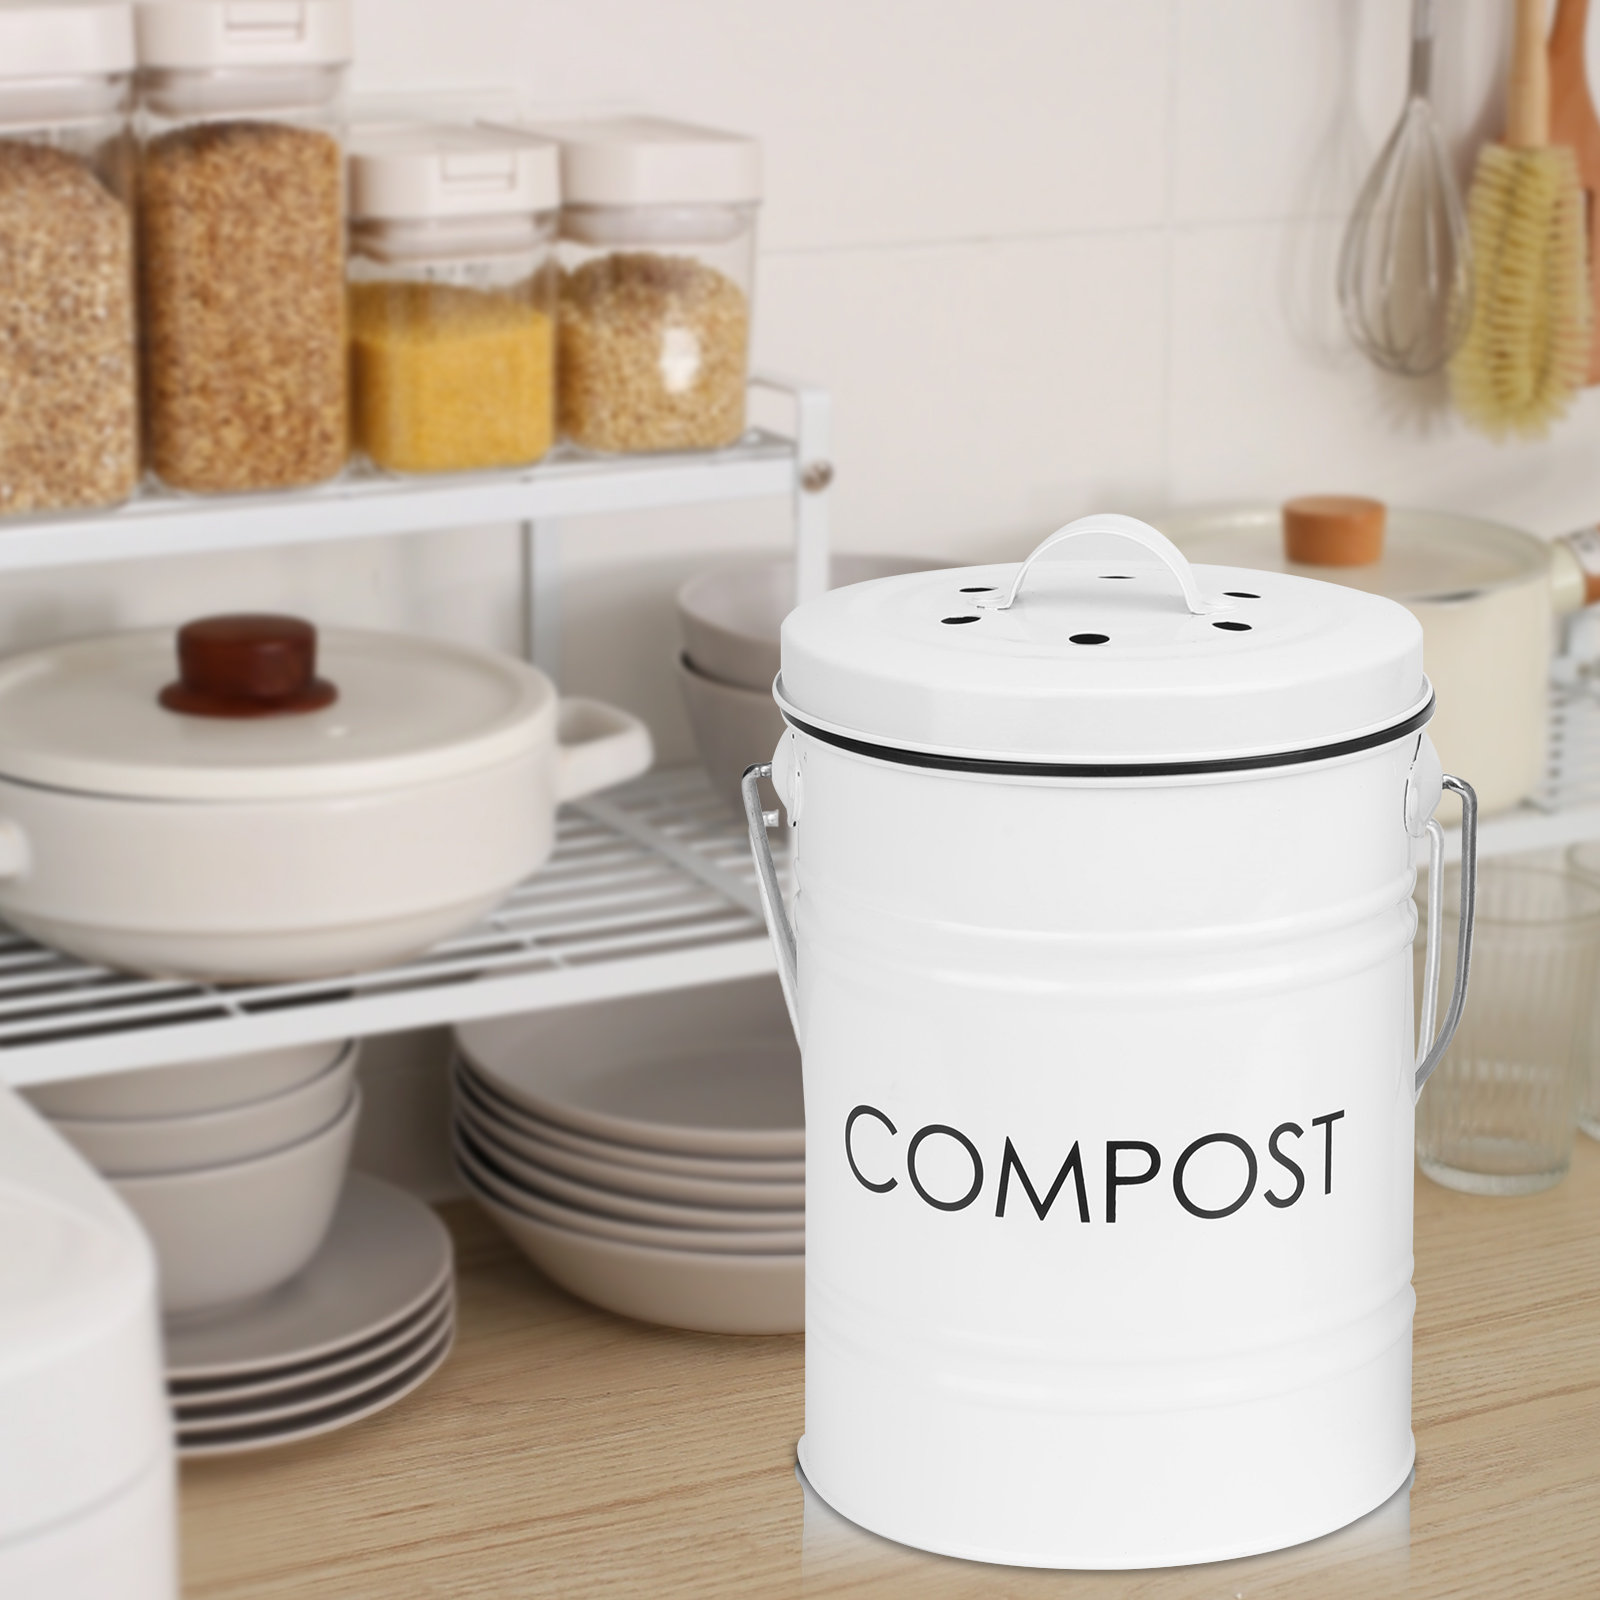  OGGI Countertop Compost Bin with Lid-1 Gallon Indoor